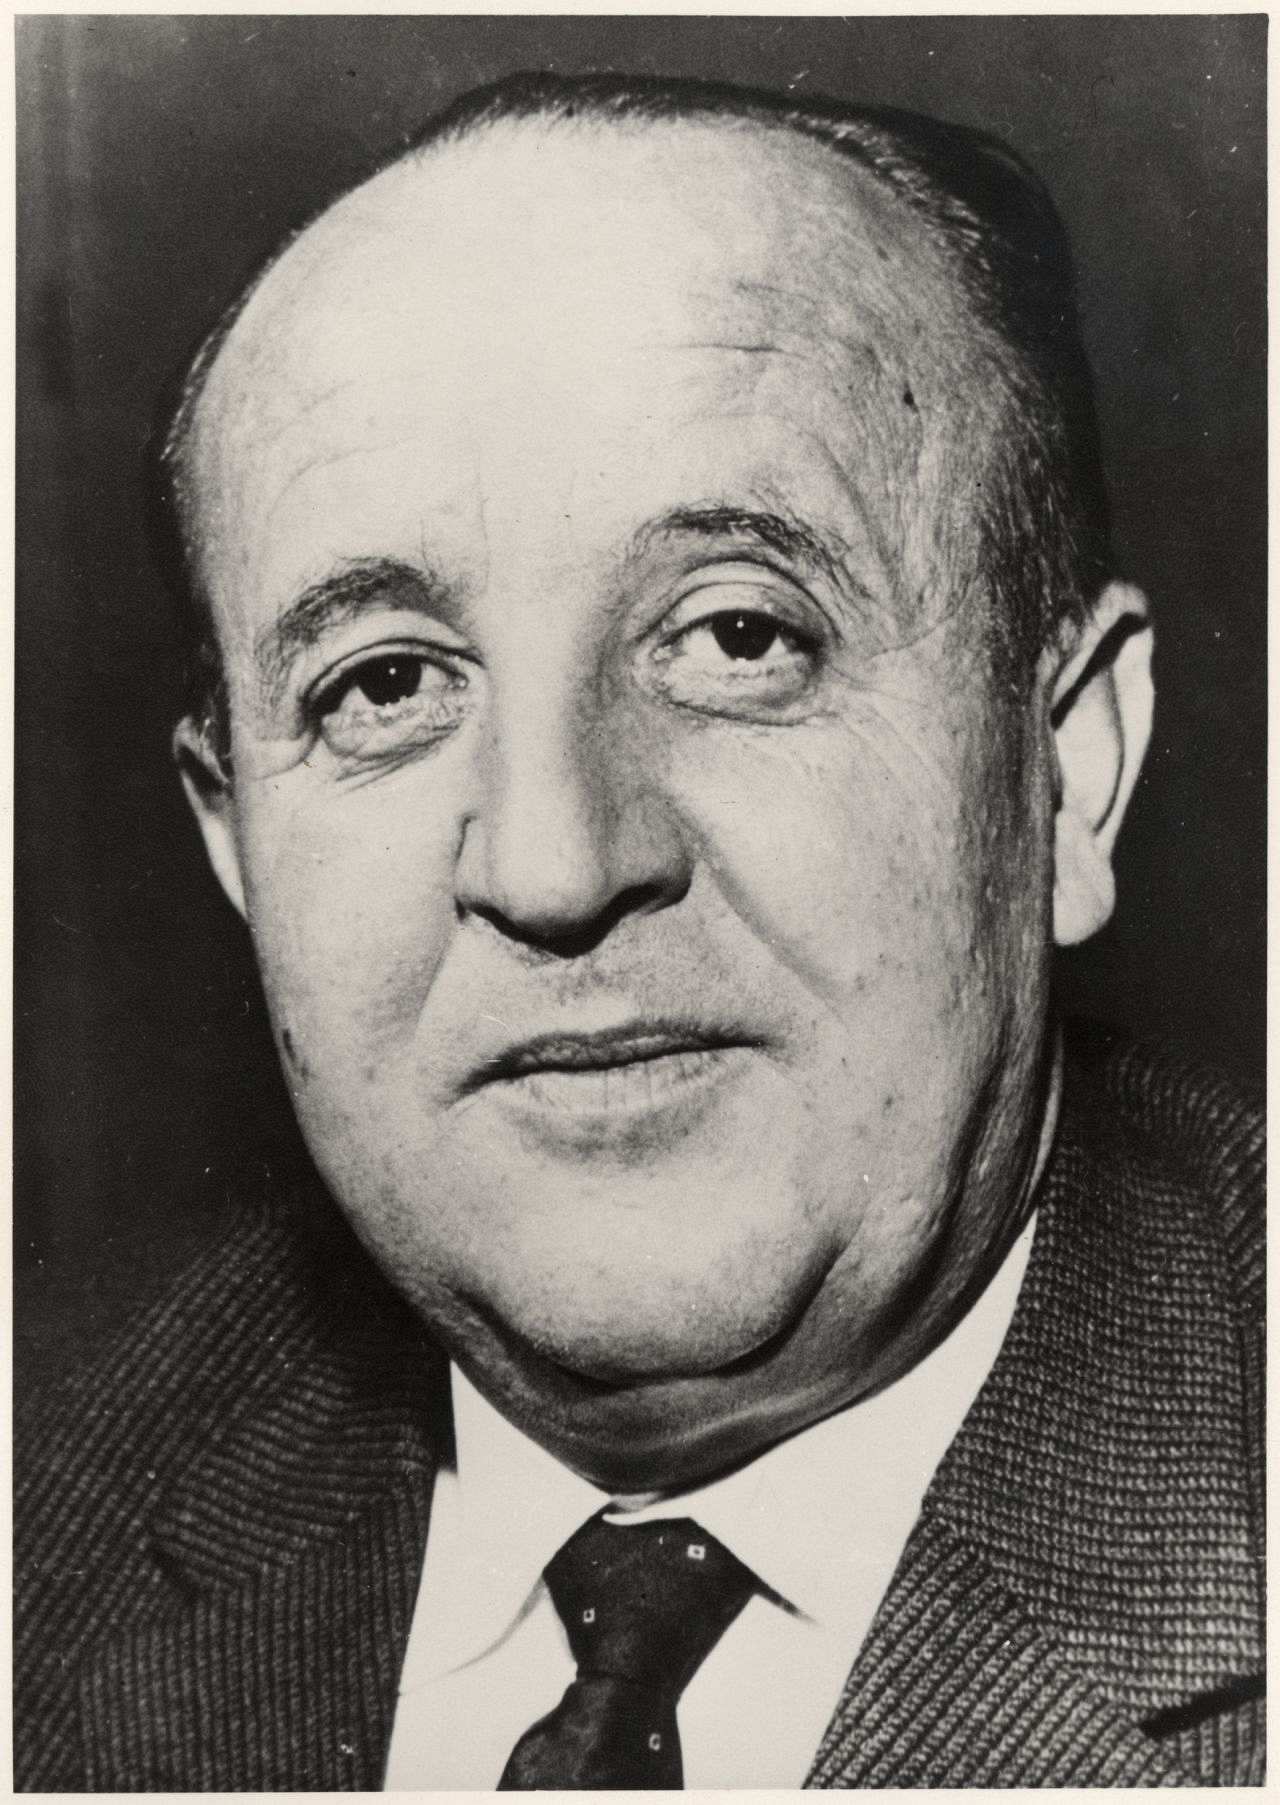 Portätfoto von Hermann Höcherl, Bundesinnenminister (1961-1965), Bundesminister für Ernährung, Landwirtschaft und Forsten (1965-1969).